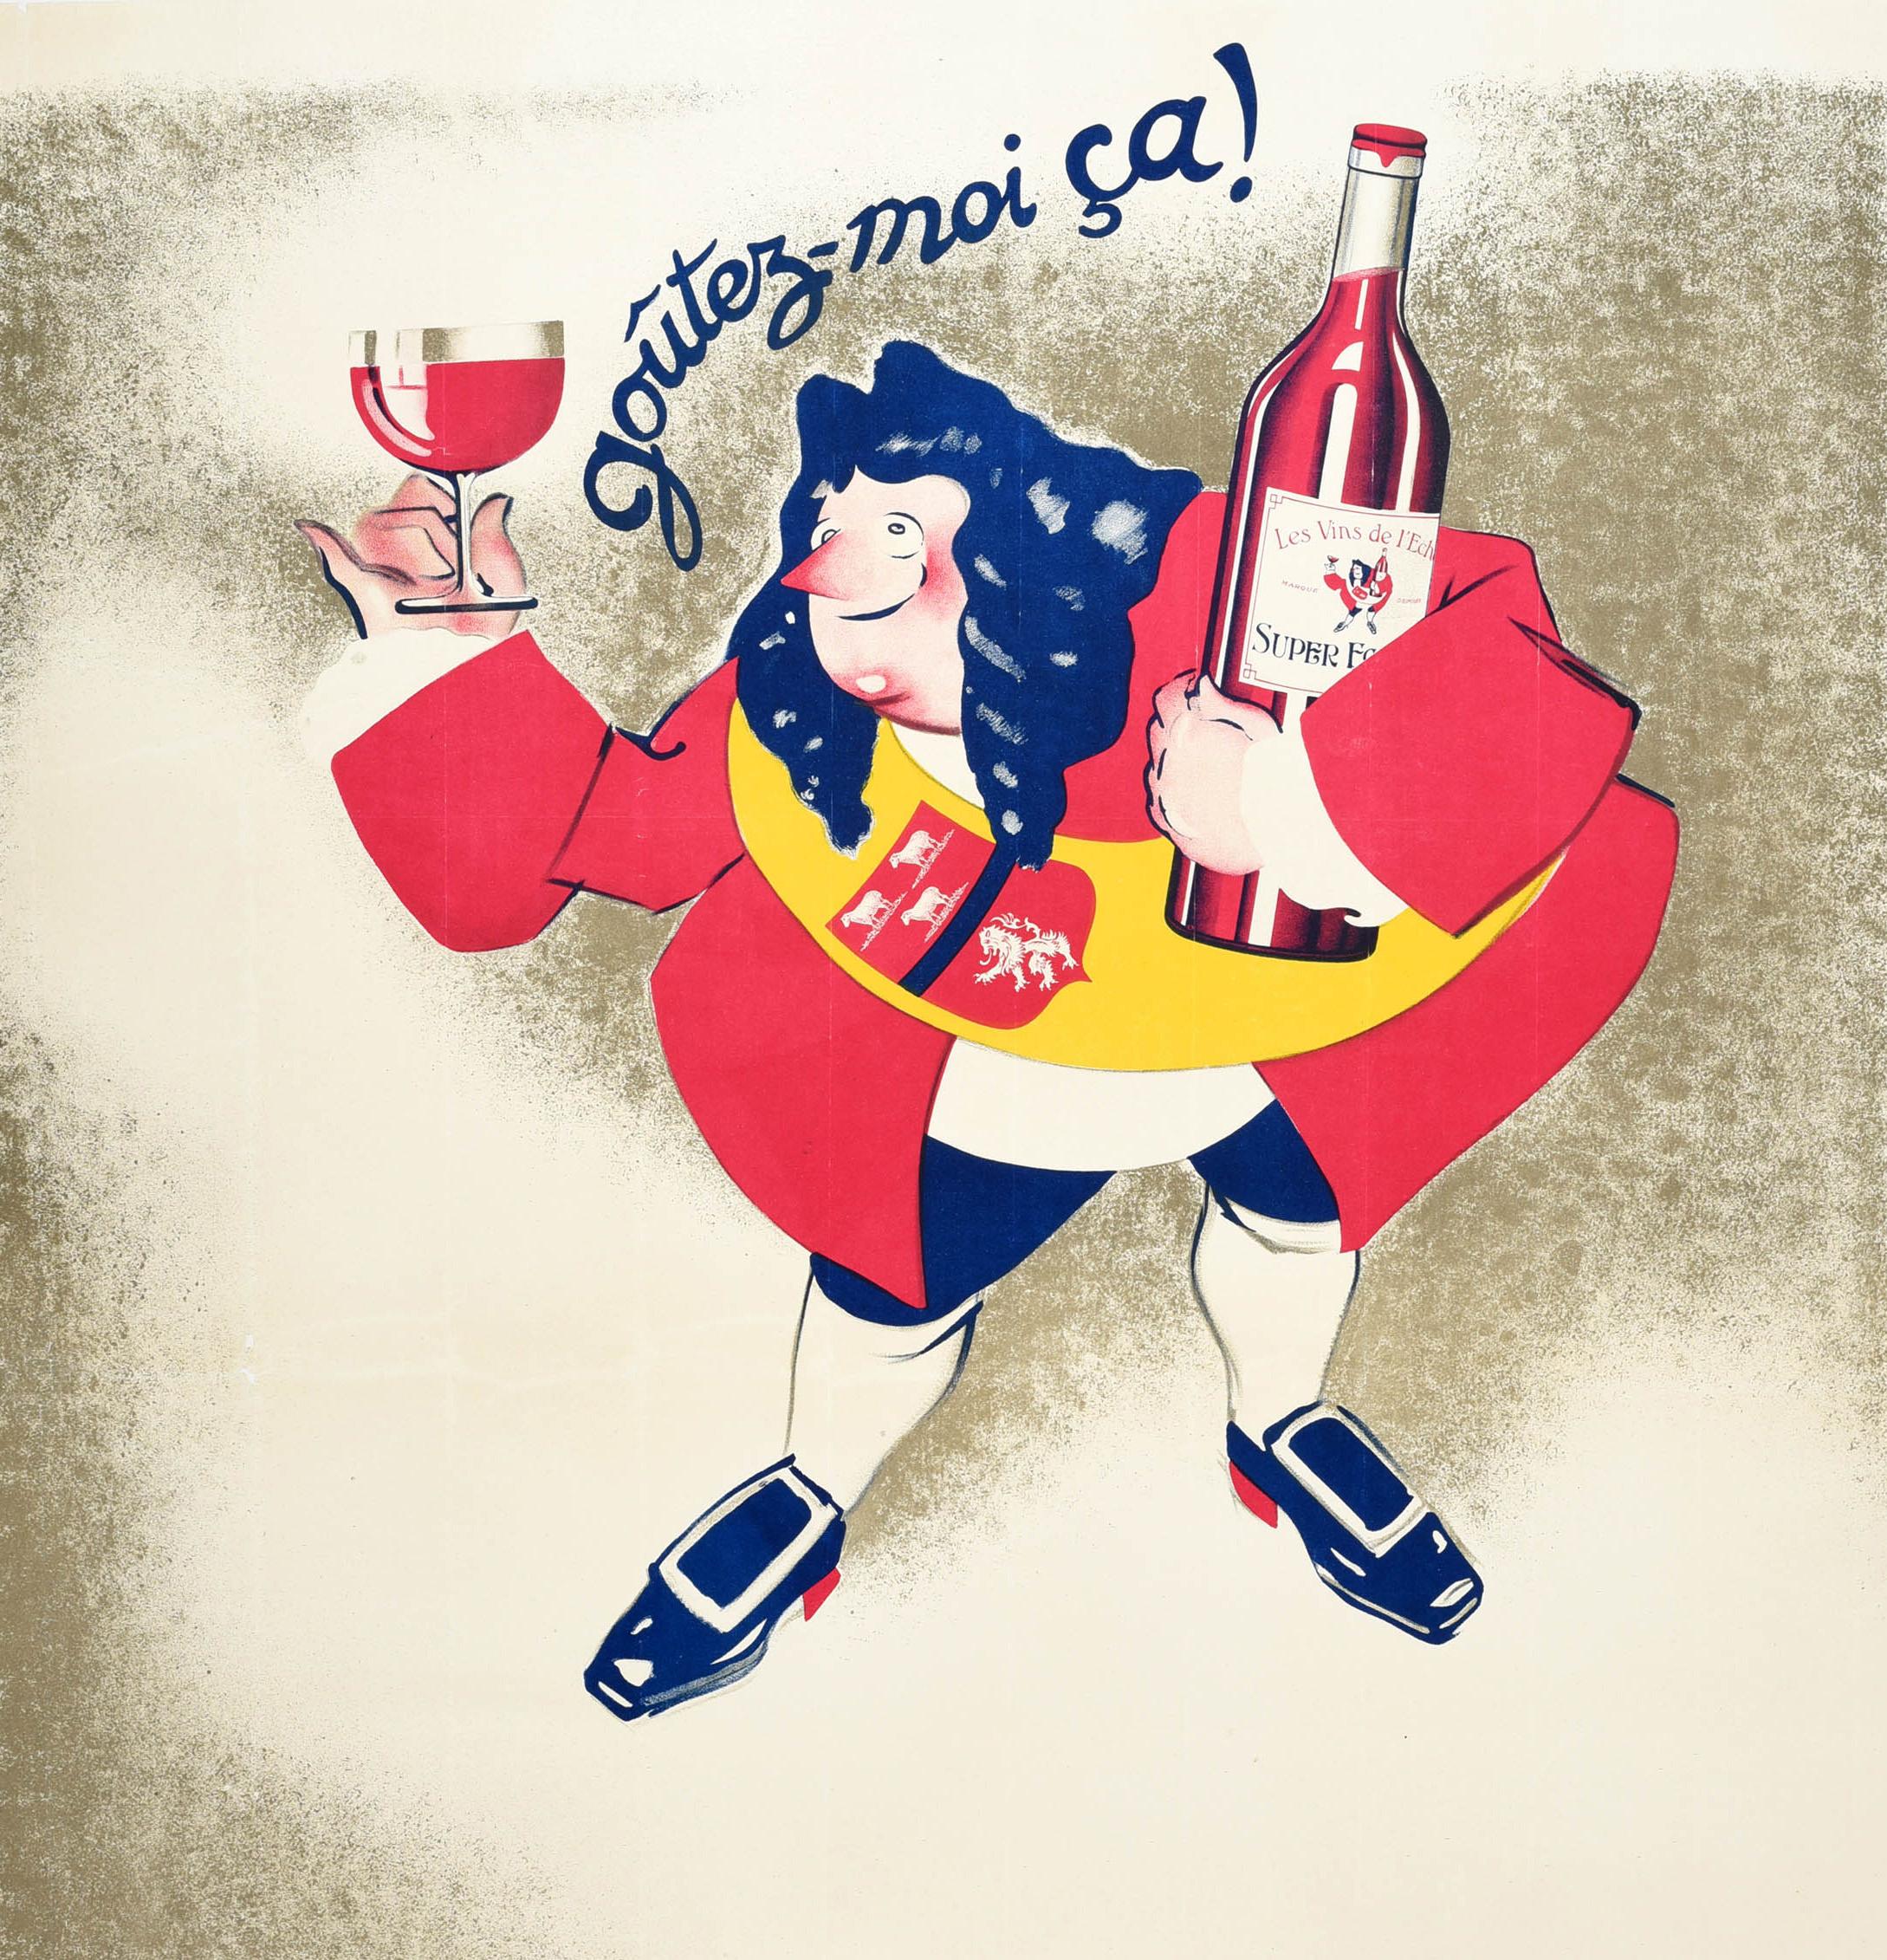 Affiche publicitaire originale pour Echanson Wines / Les Vins De L'Echanson, avec un dessin amusant représentant un homme souriant tenant une grande bouteille de vin dans un bras et un verre de vin rouge dans l'autre main, le texte stylisé au-dessus